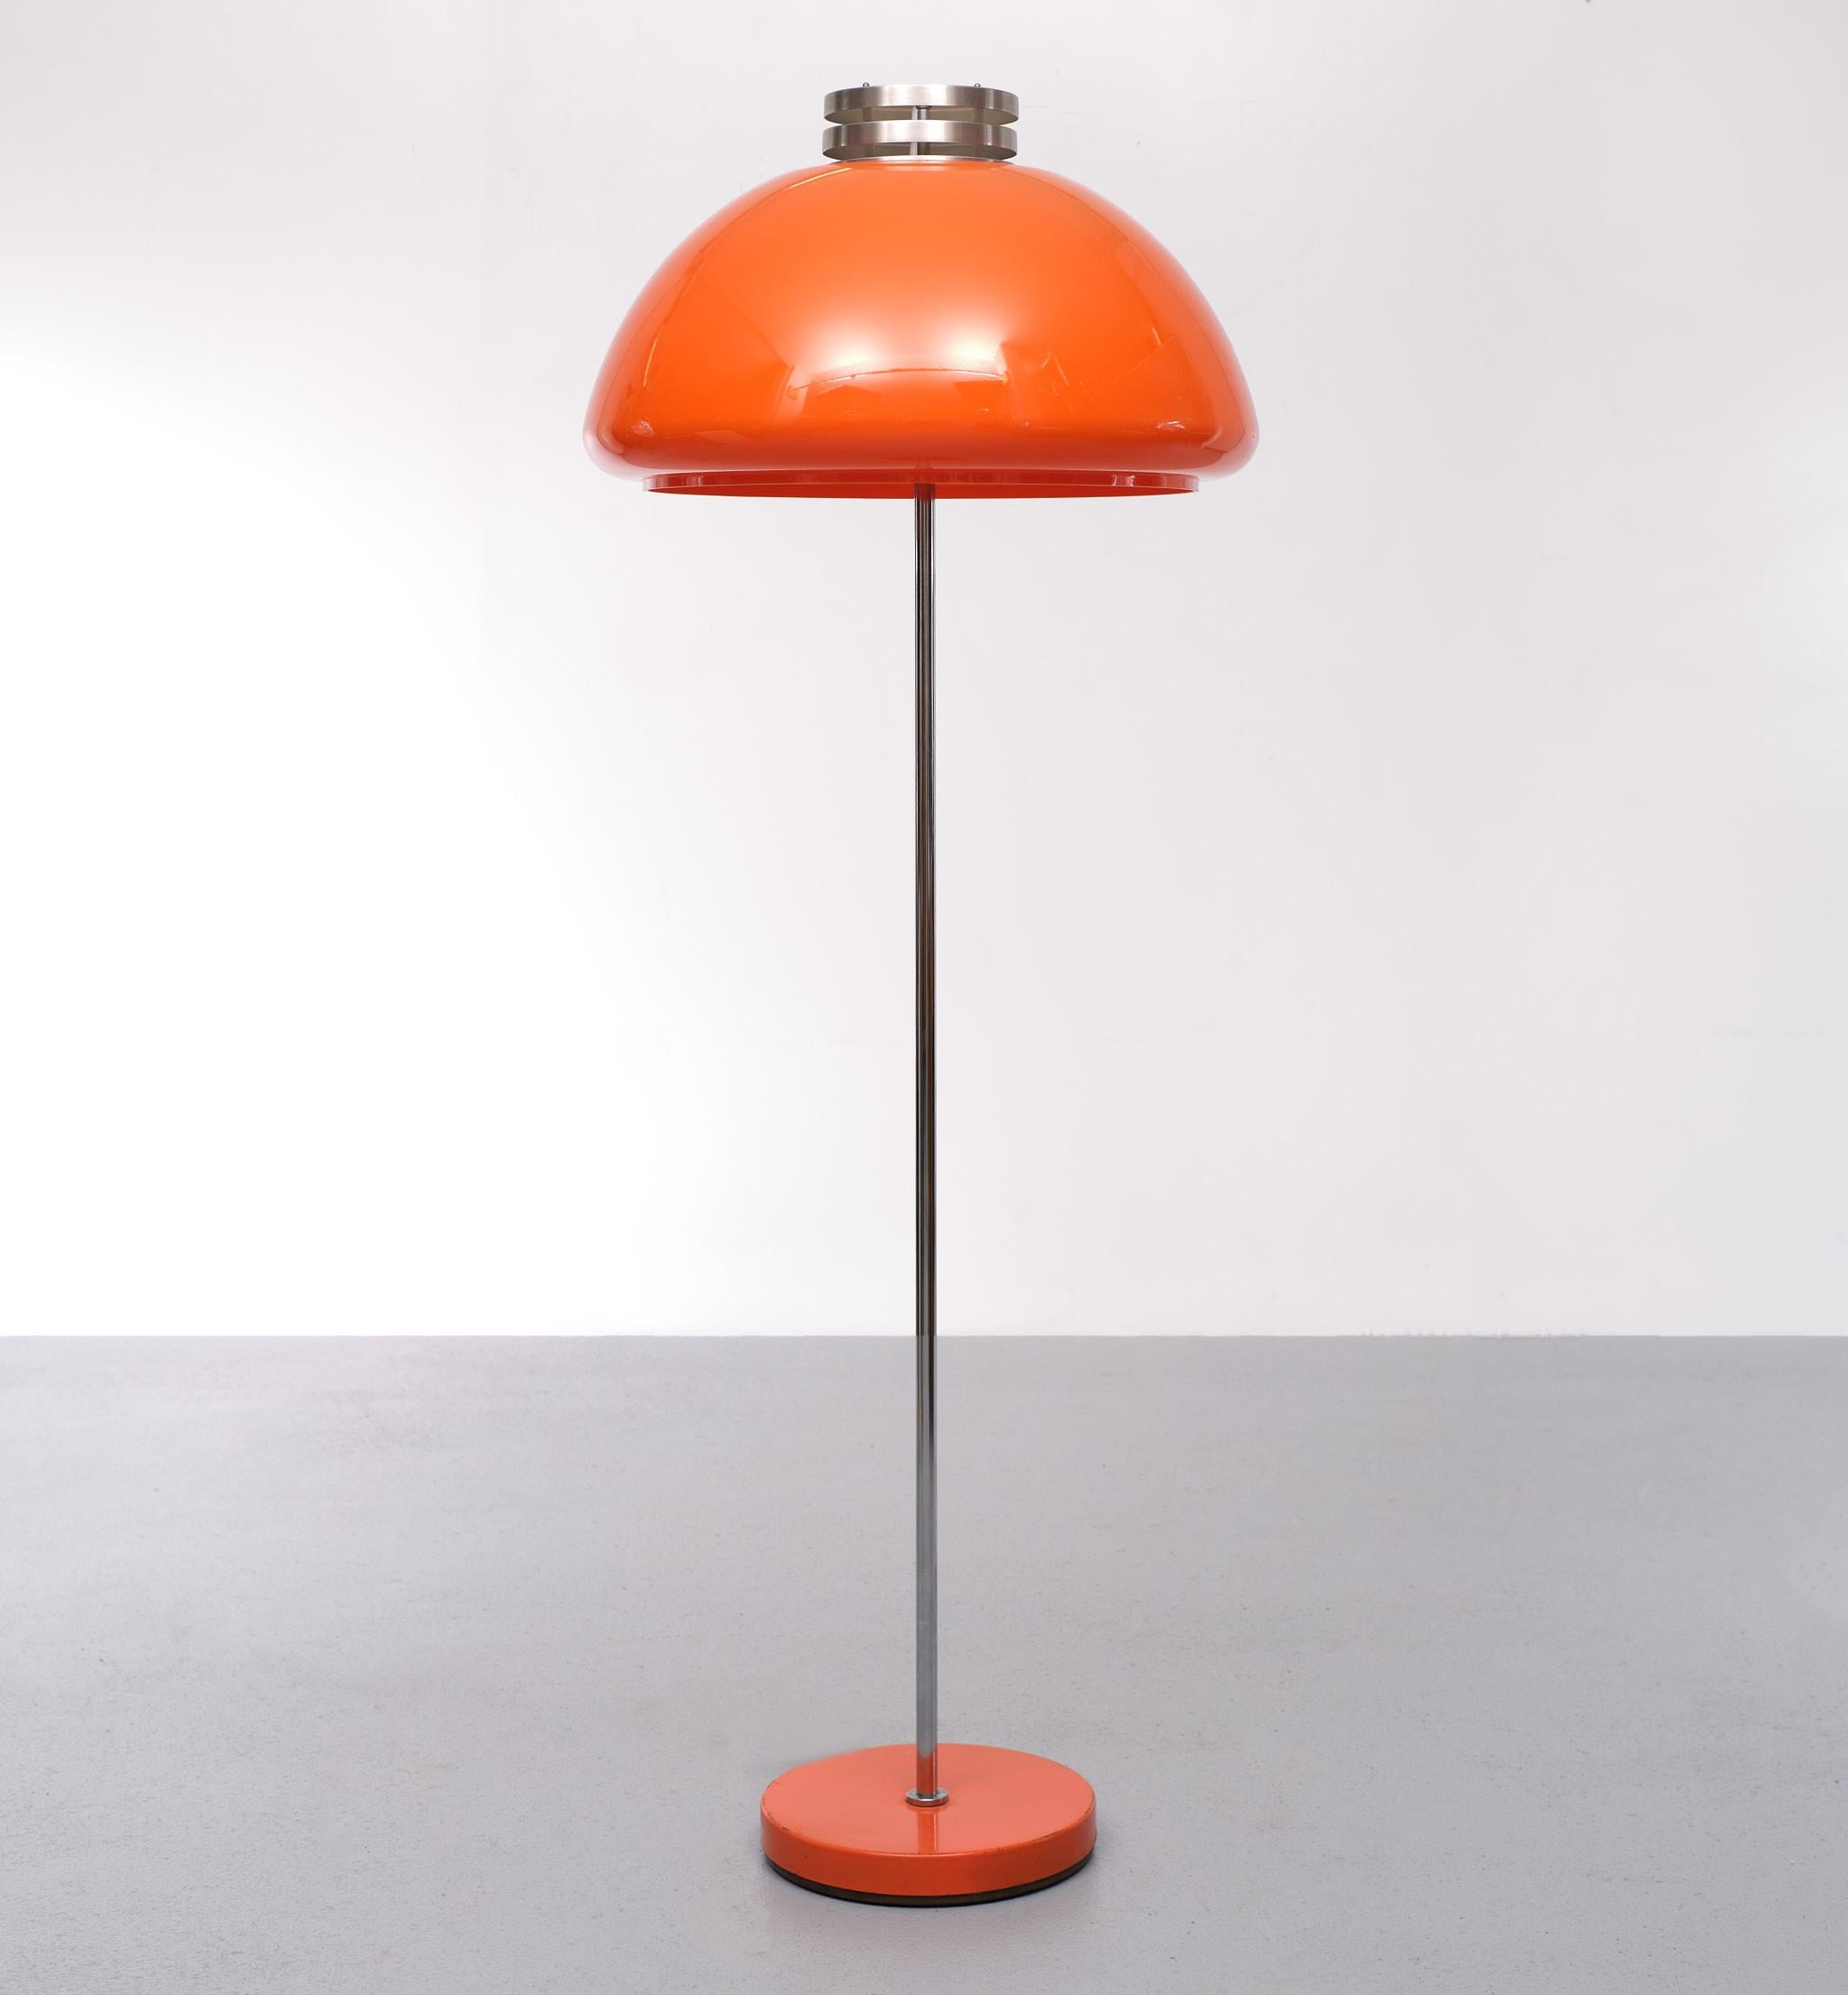 Ich liebe diese Stehlampe im Metropolis-Stil. Großer leuchtend orangefarbener Schirm, kommt mit 
eine Aluminiumverzierung auf der Oberseite. So typisch für diese Epoche. Brauchen zwei große Glühbirnen E27. Wird mit einem Fußschalter geliefert.